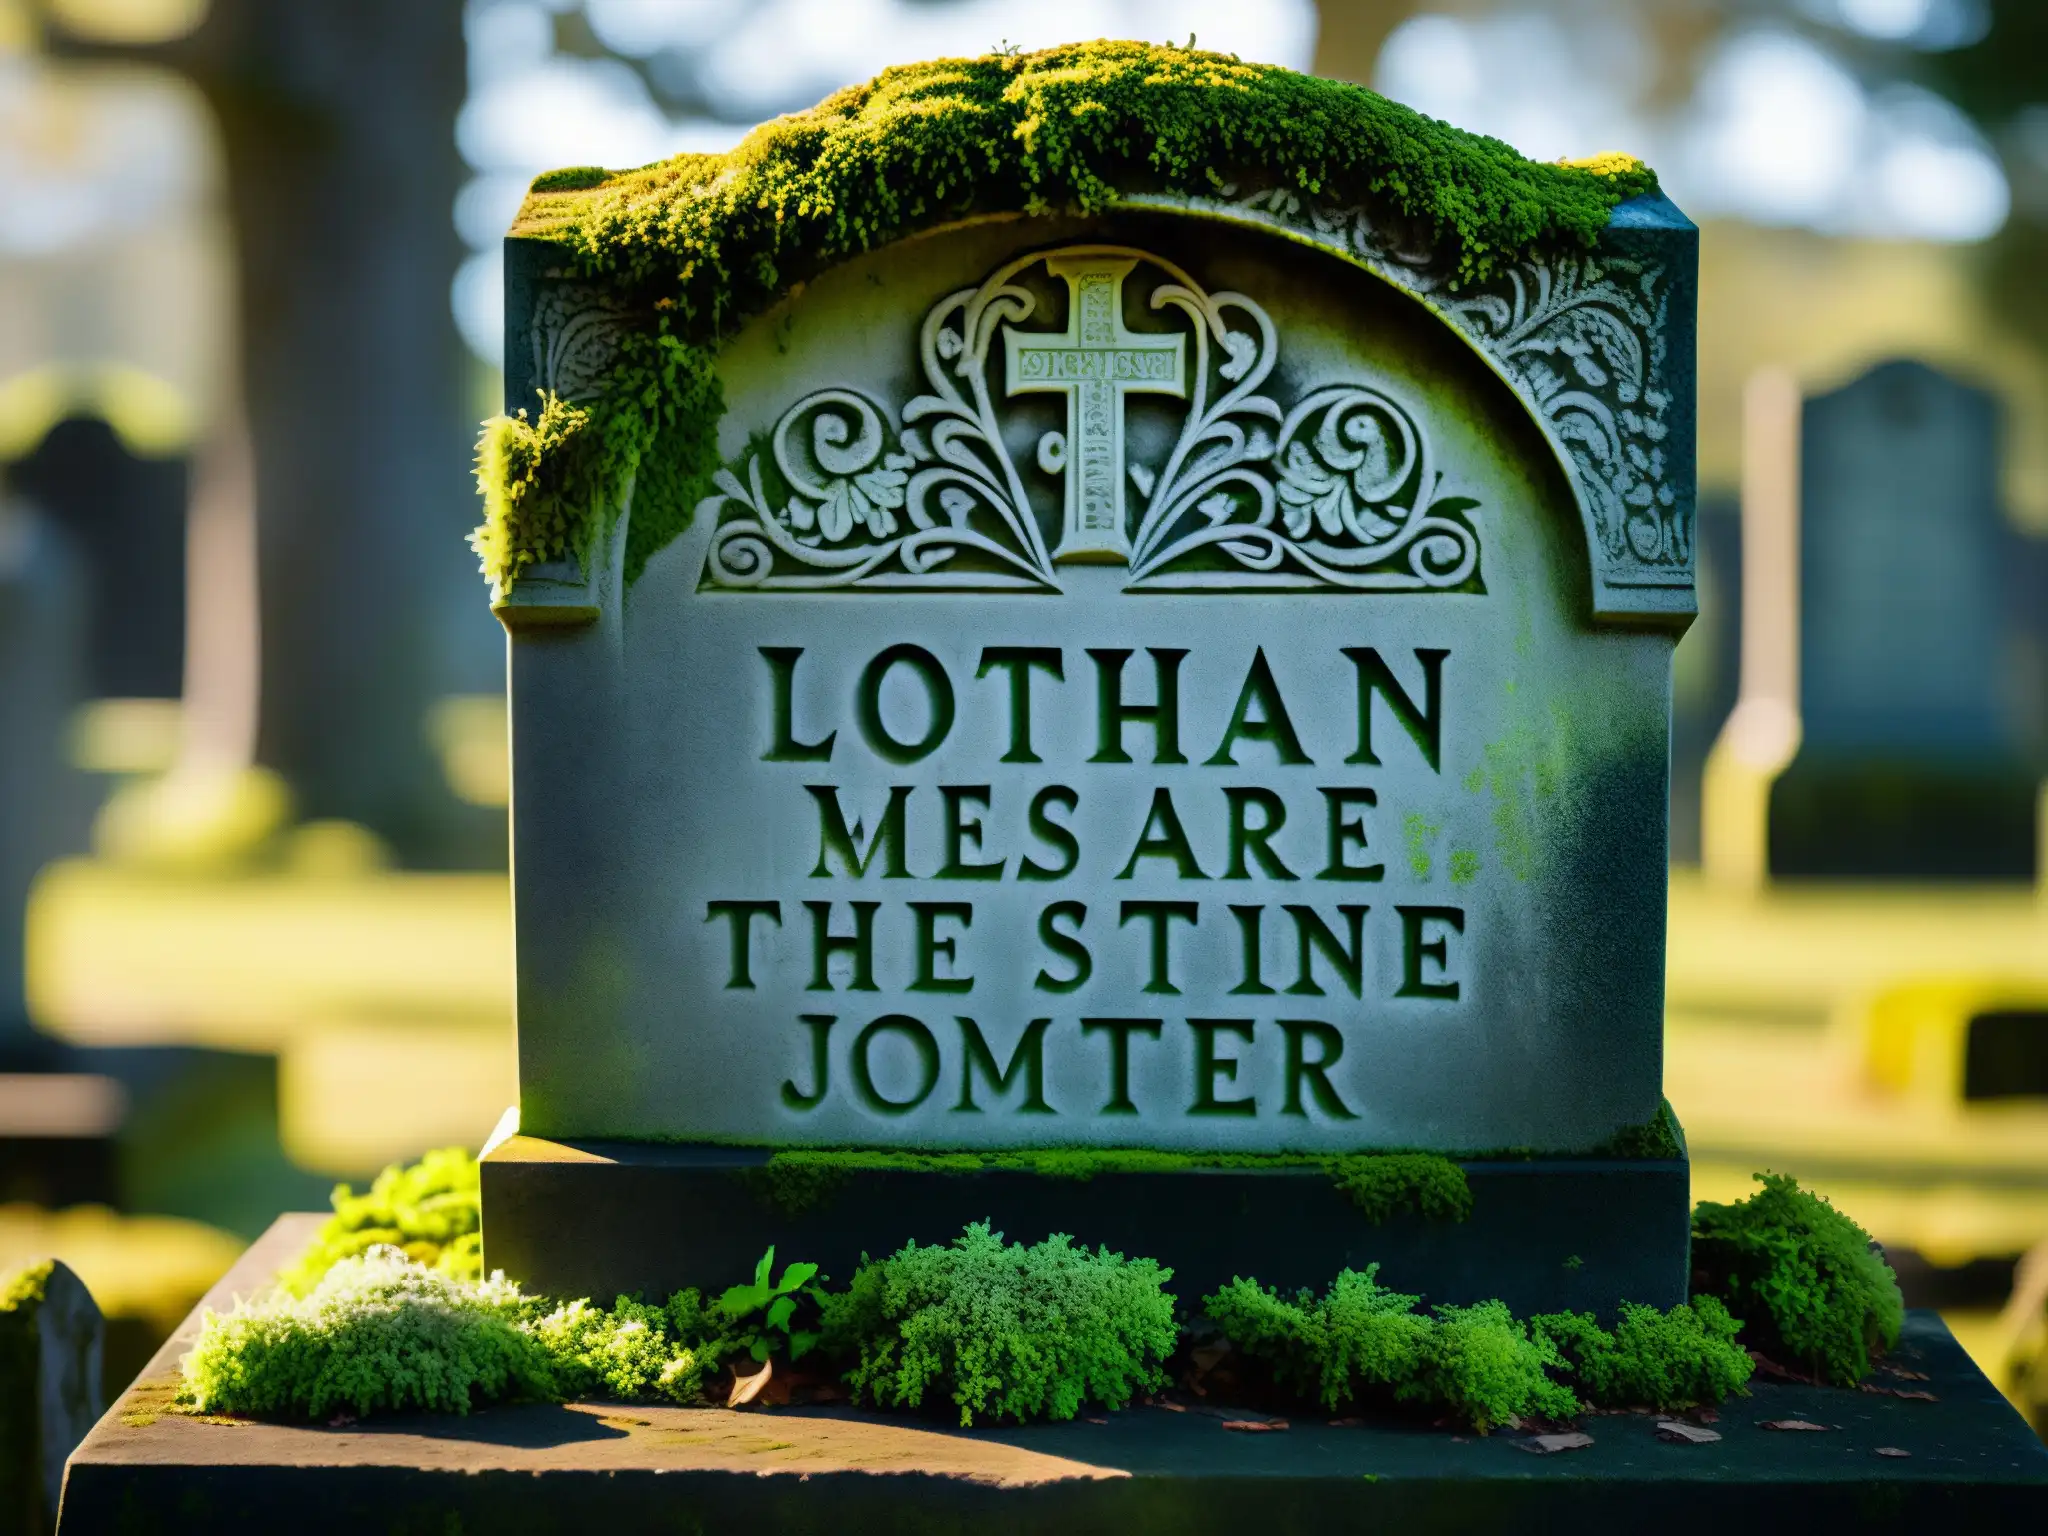 Presencia del Más Allá en Cementerio Lothian: Detalle de antigua lápida cubierta de musgo y líquenes, iluminada por la luz entre los árboles